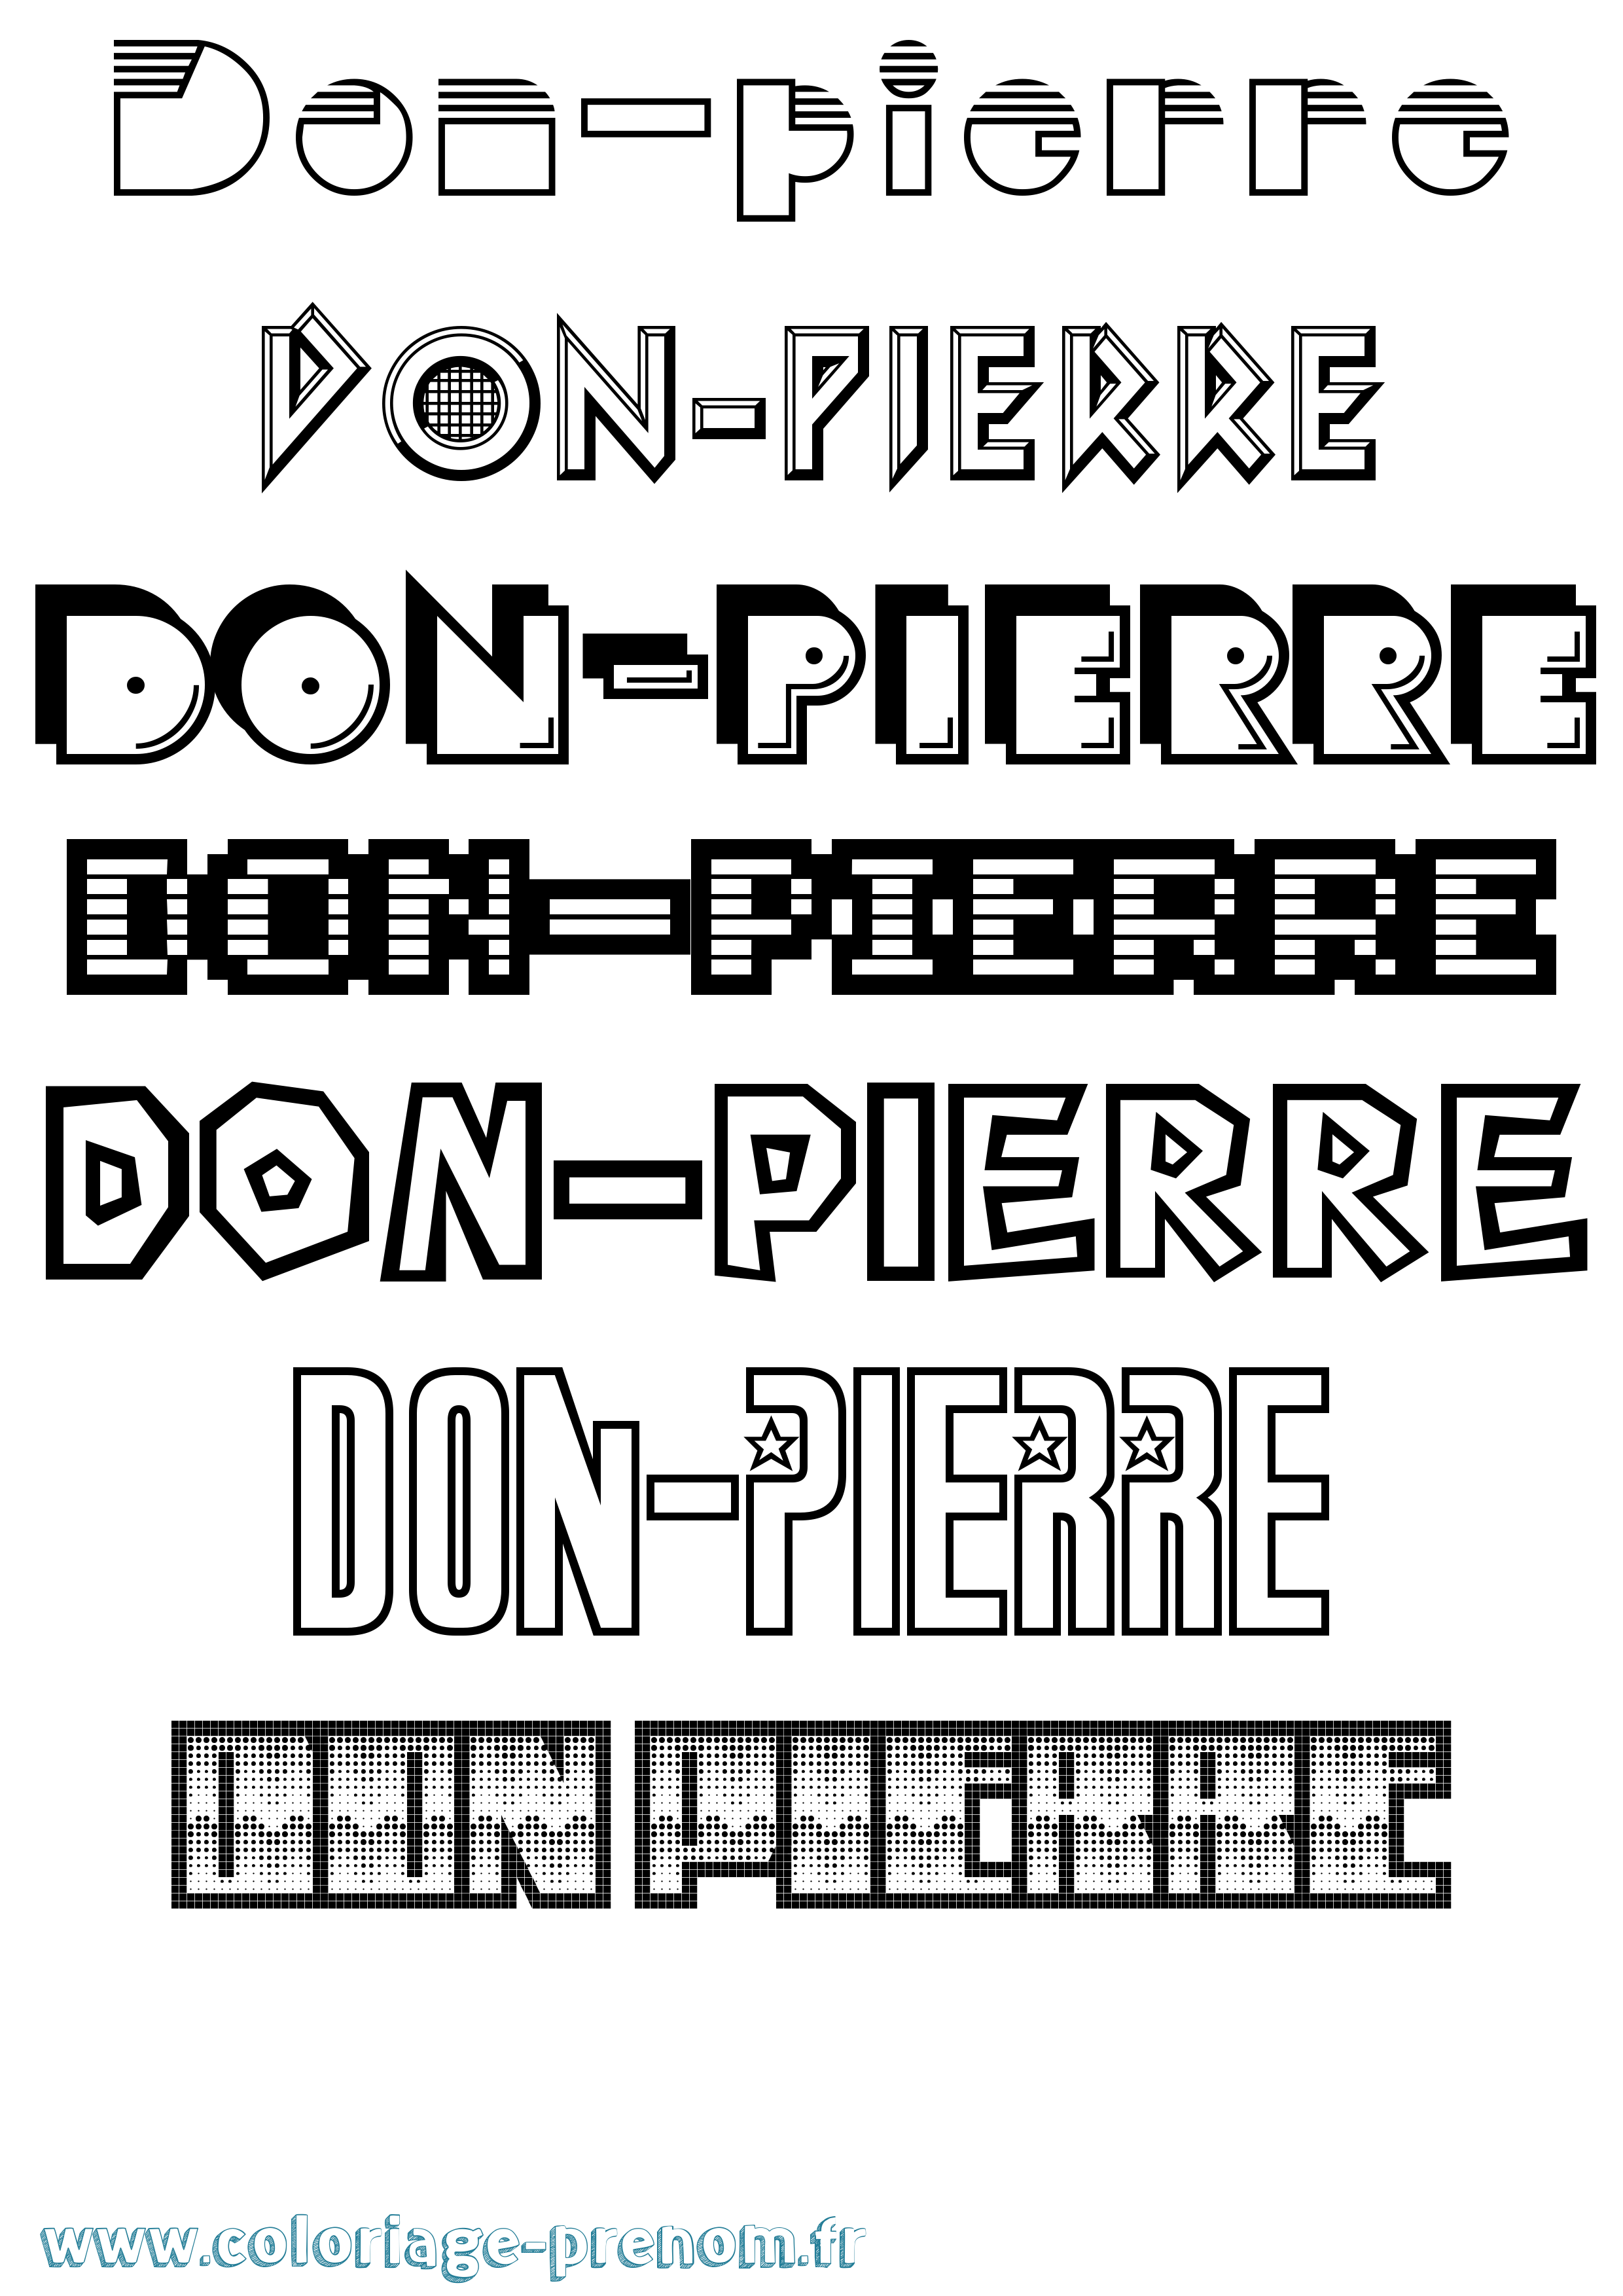 Coloriage prénom Don-Pierre Jeux Vidéos